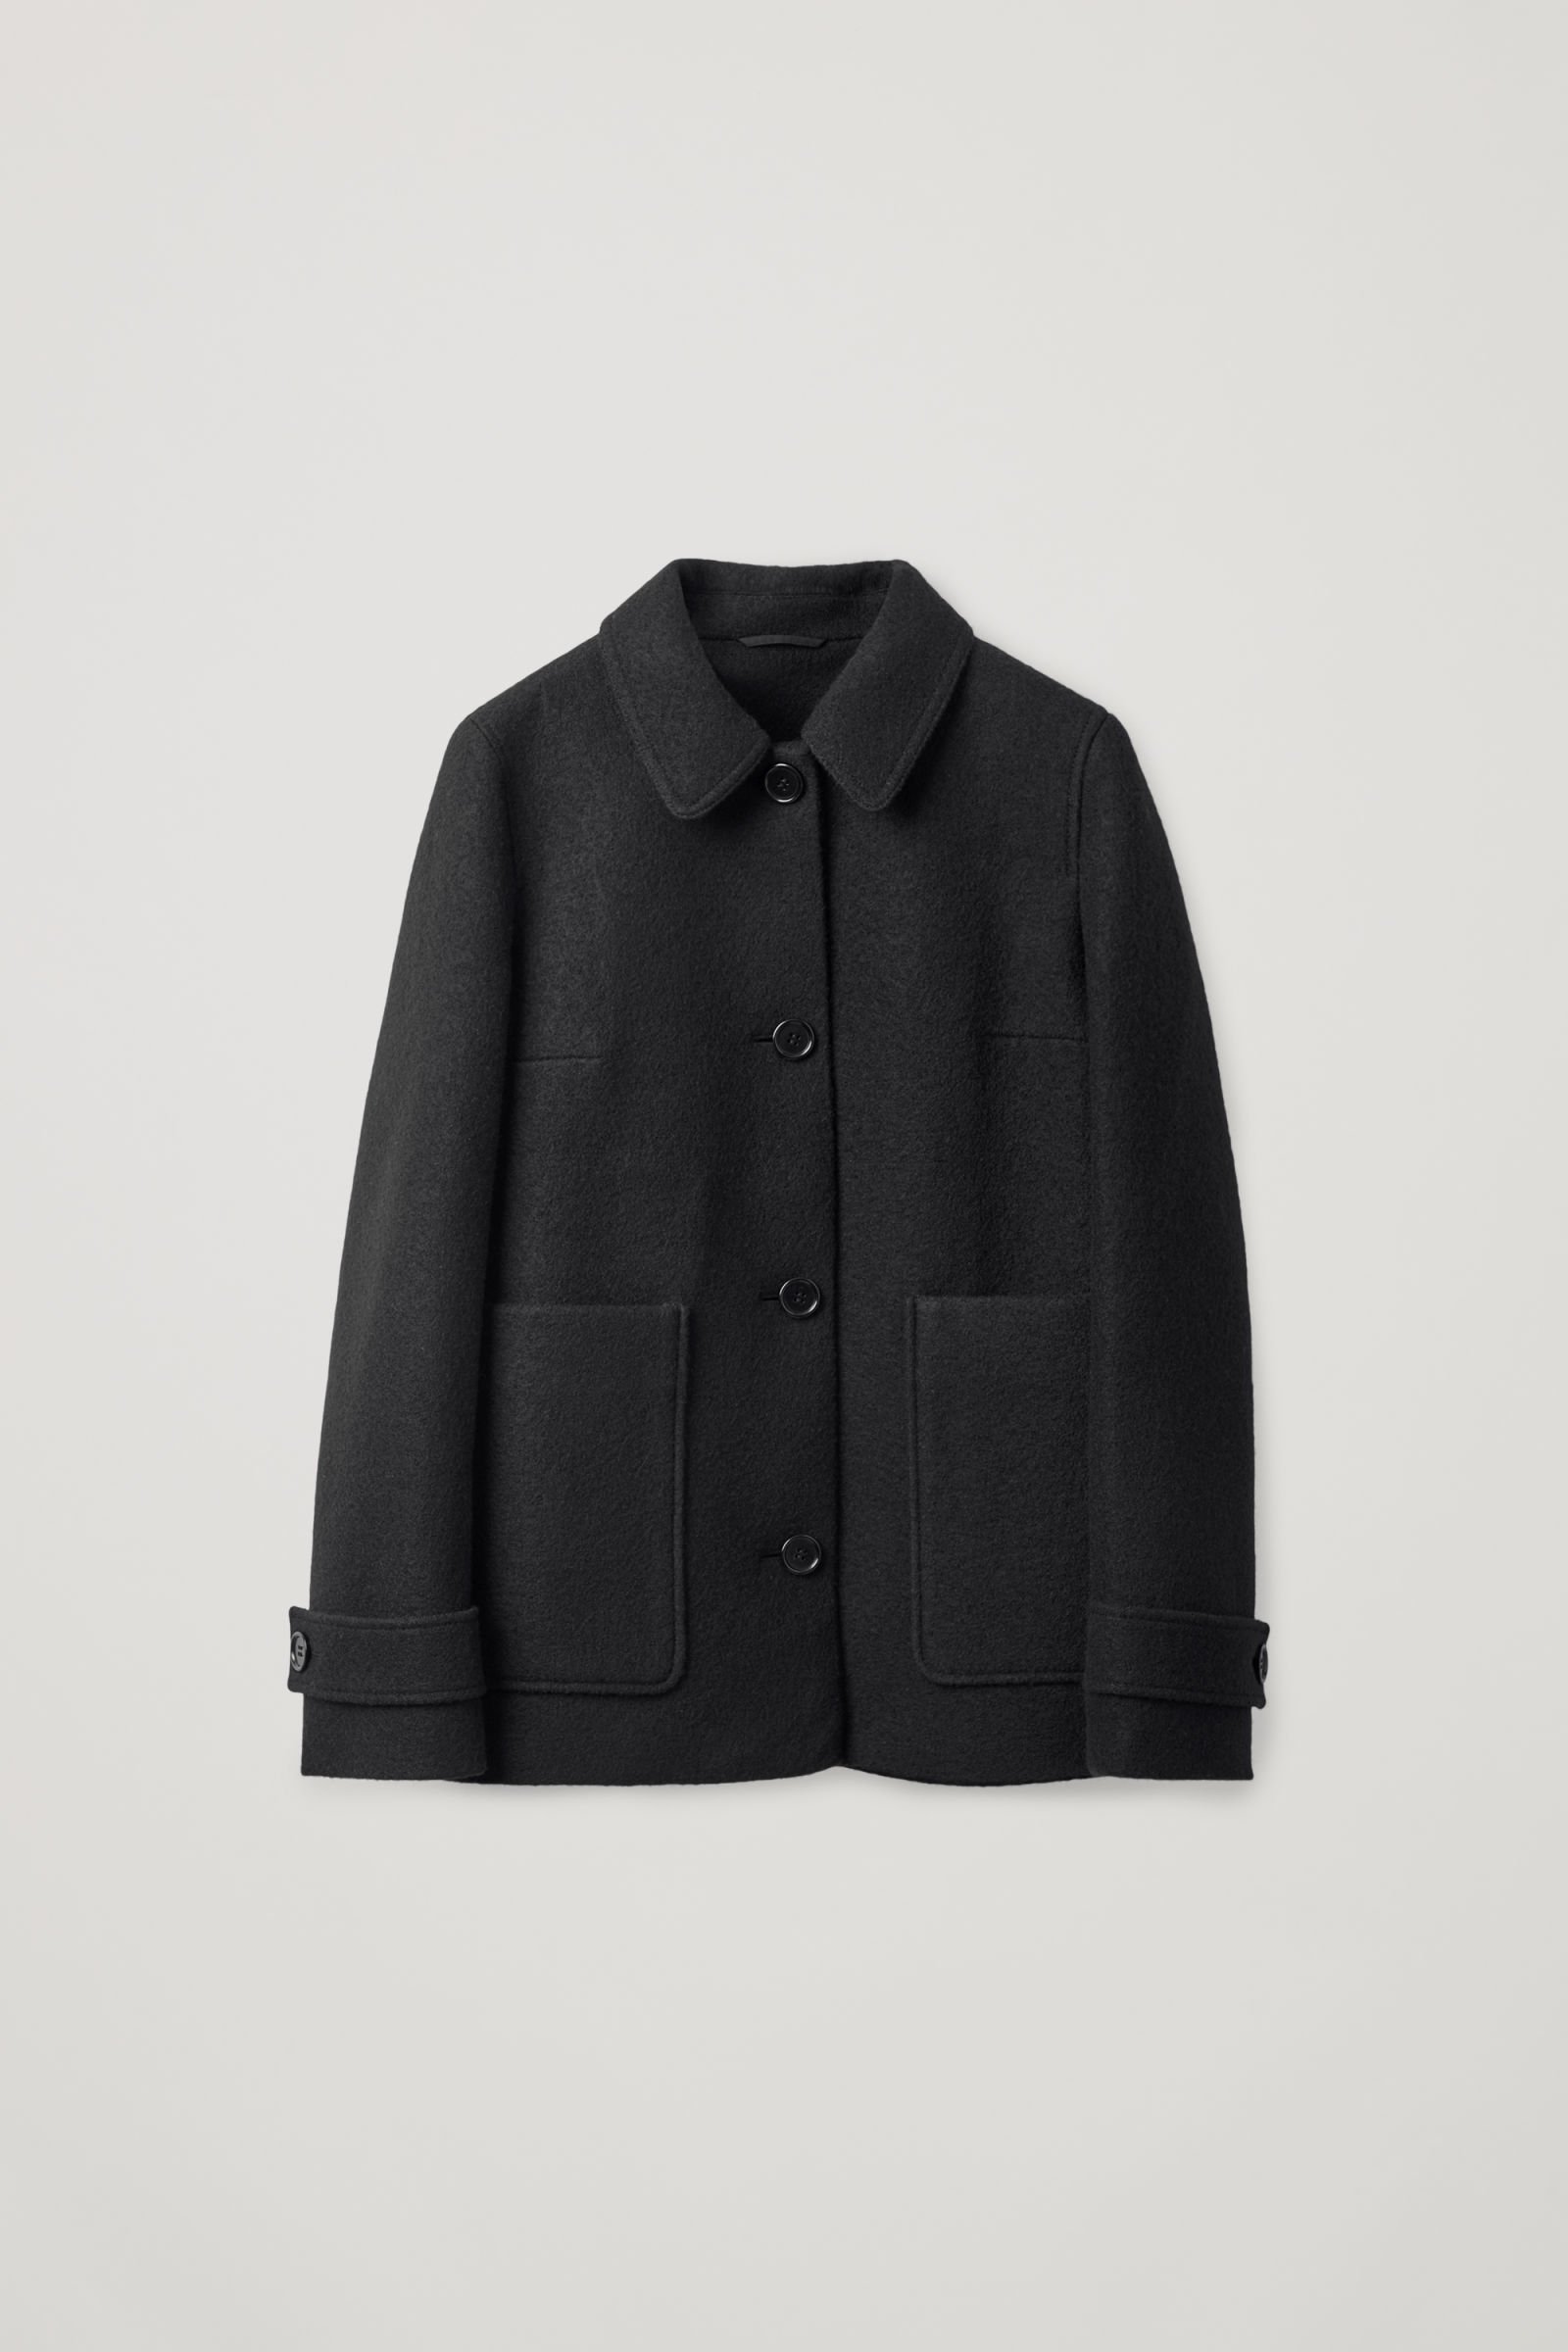 COS Boiled Wool Jacket in Black | Endource